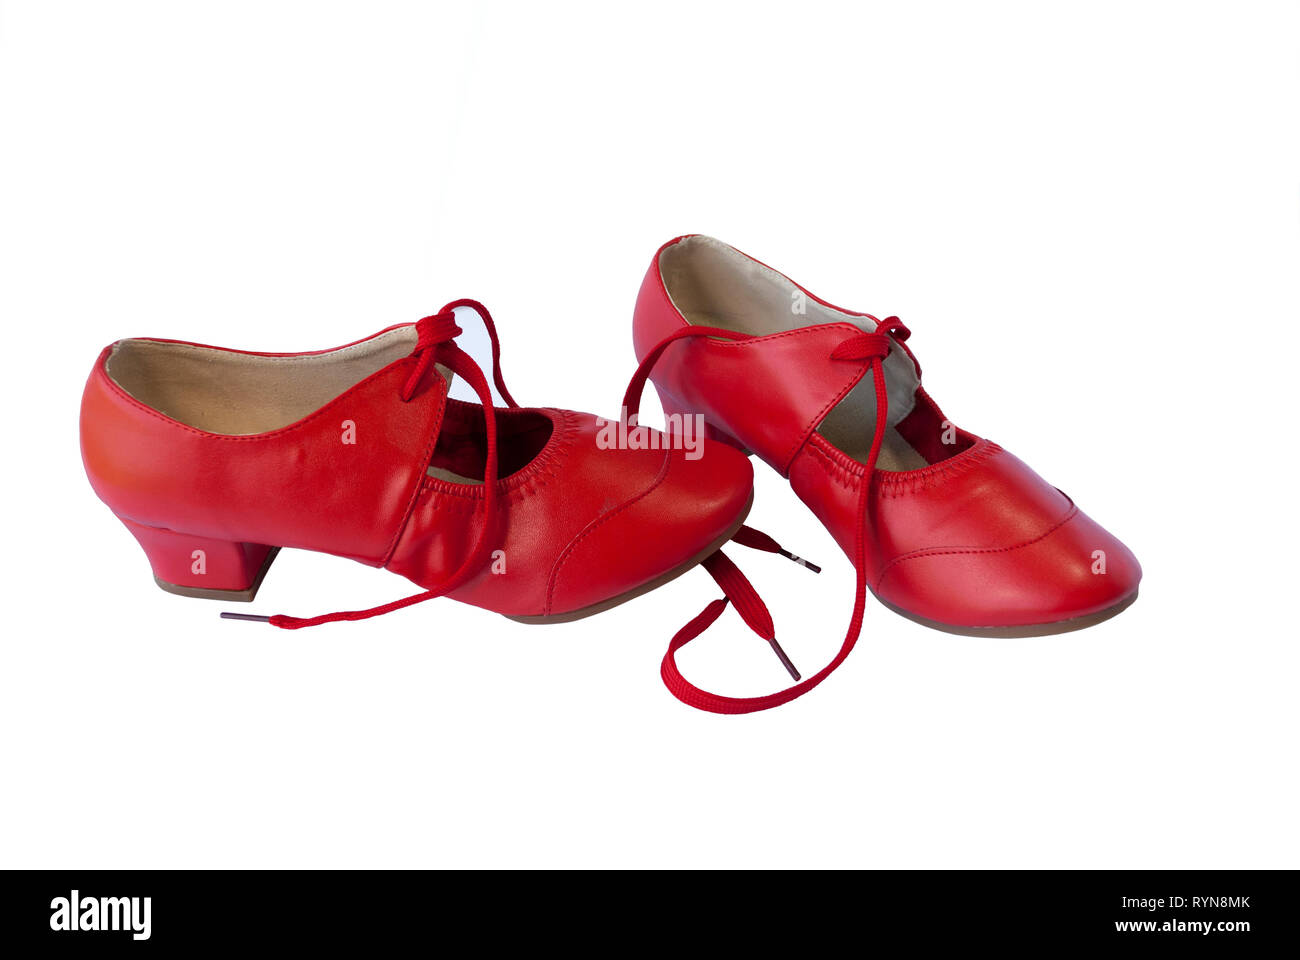 Rot Leder Paar Schuhe für Tänzerin. Traditionelle retro style Schuhe  Stockfotografie - Alamy